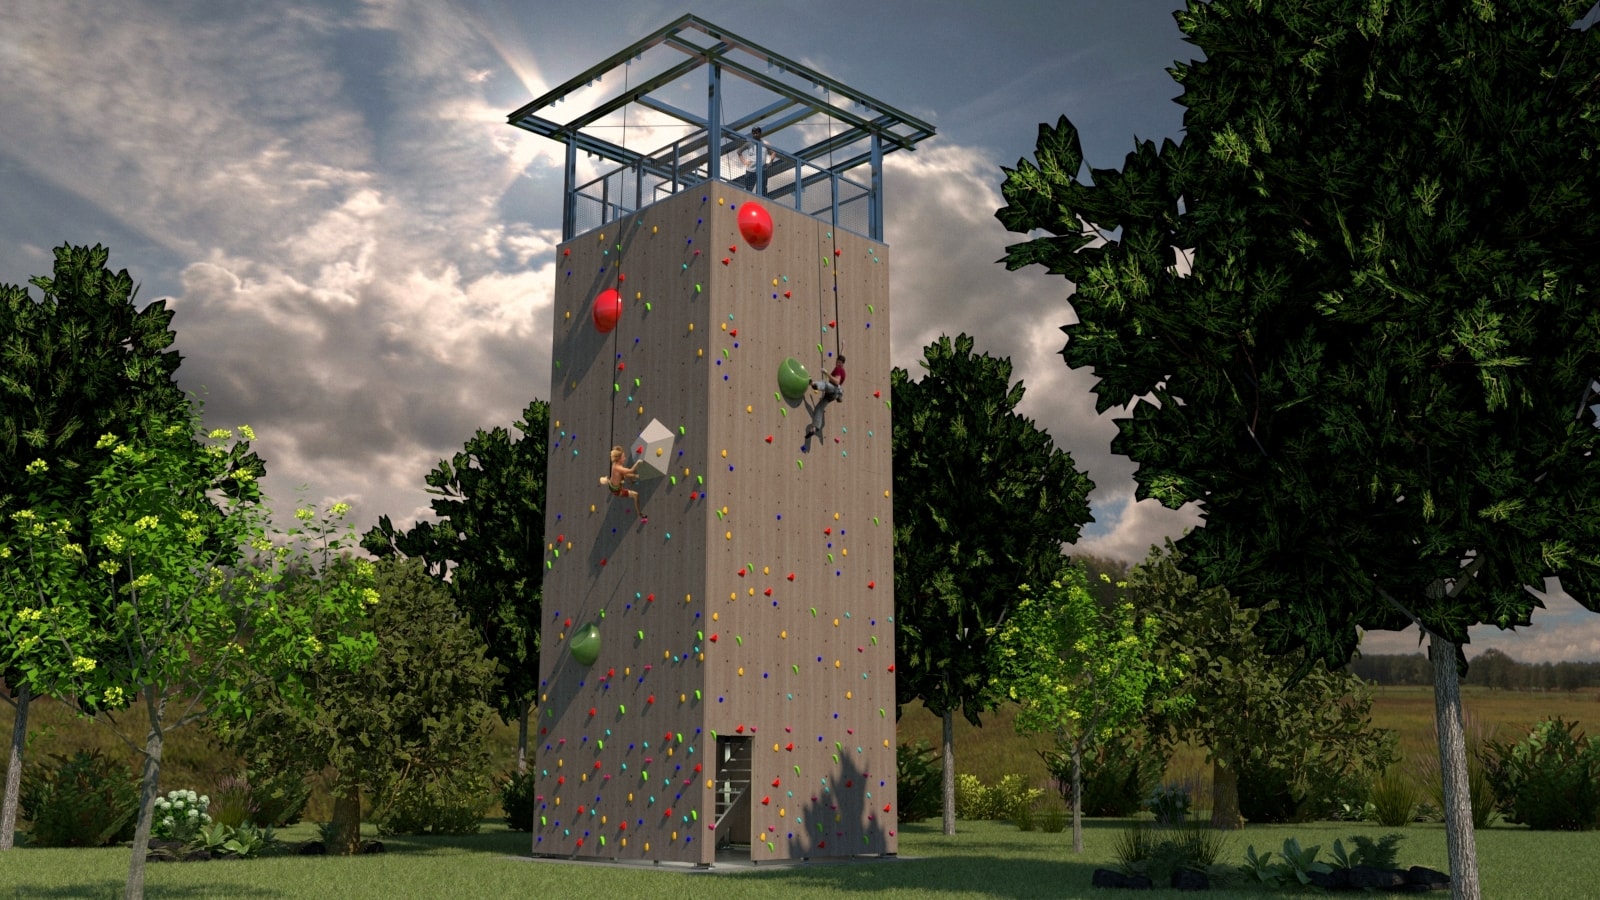 climbing wall installer, climbing wall design